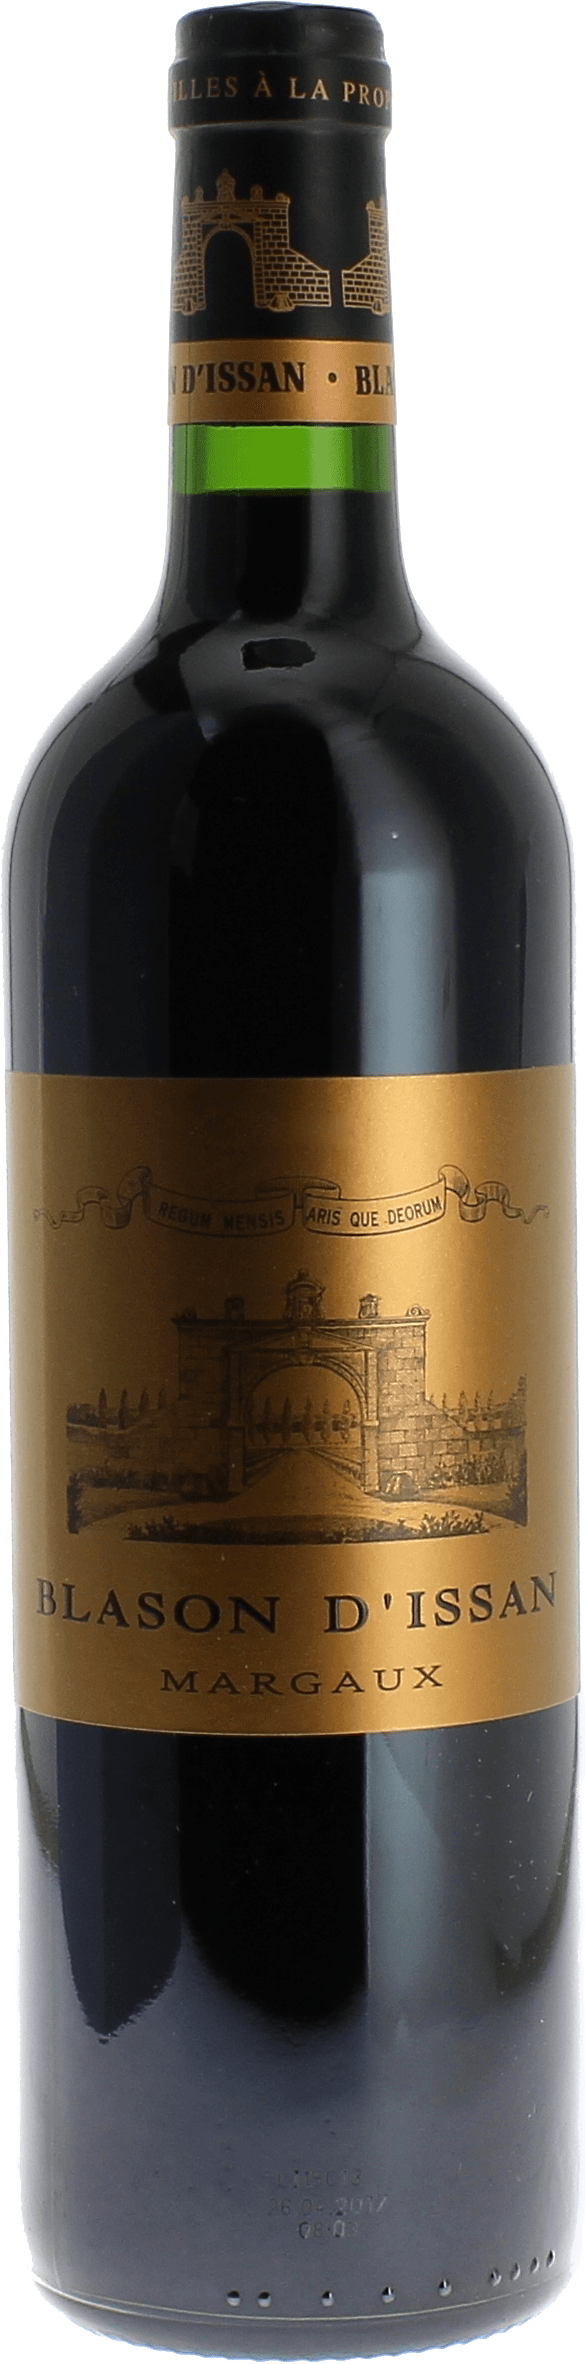 Blason d'issan 2015 2nd vin du Chteau D'Issan Margaux, Bordeaux rouge